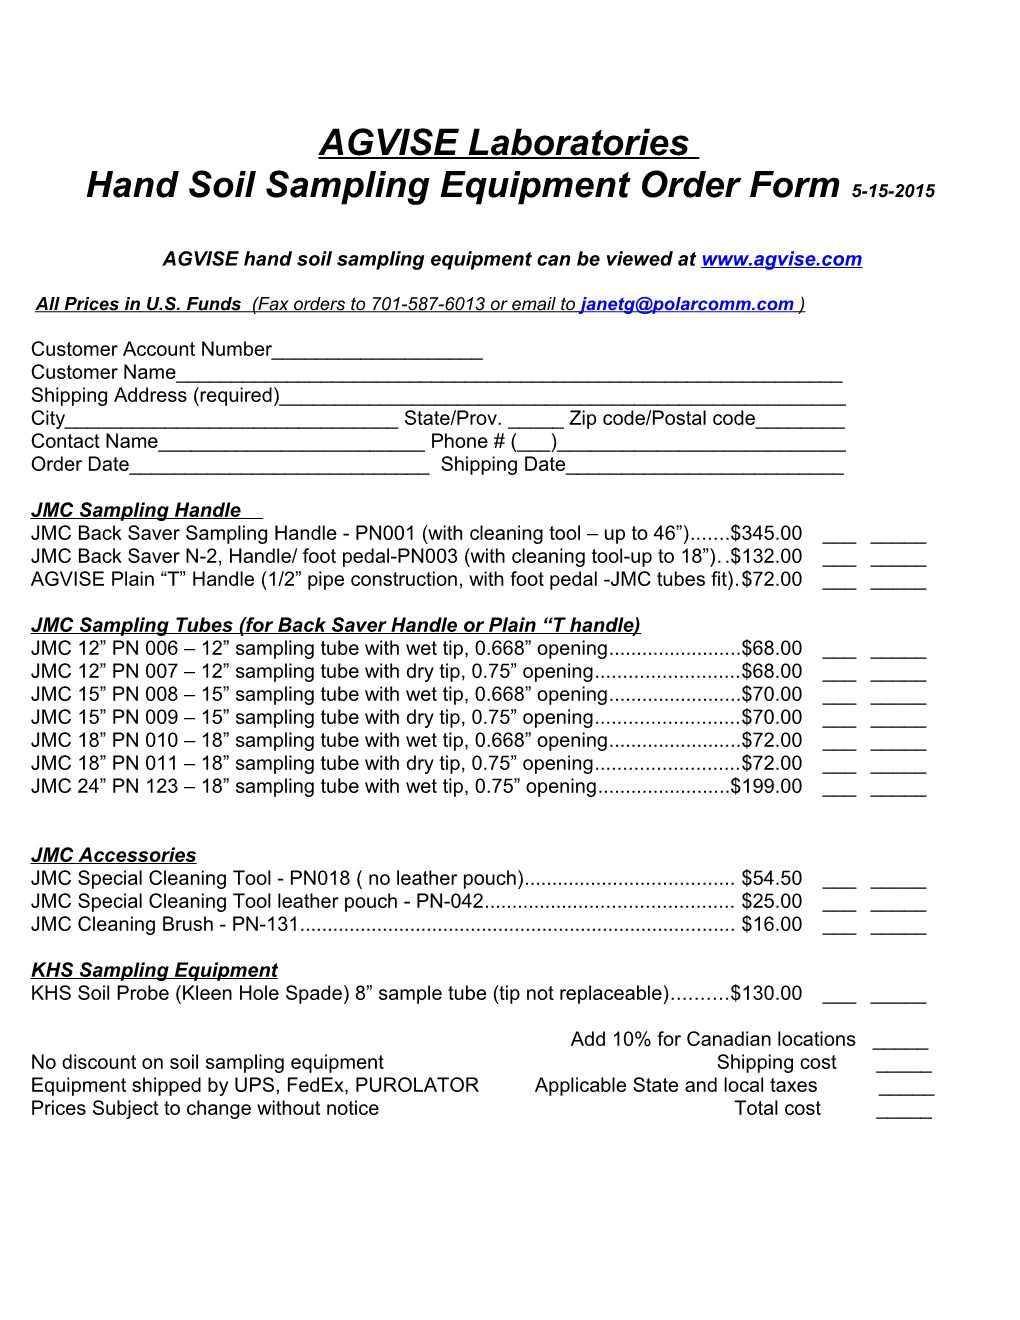 Hand Soil Sampling Equipment Order Form 5-15-2015